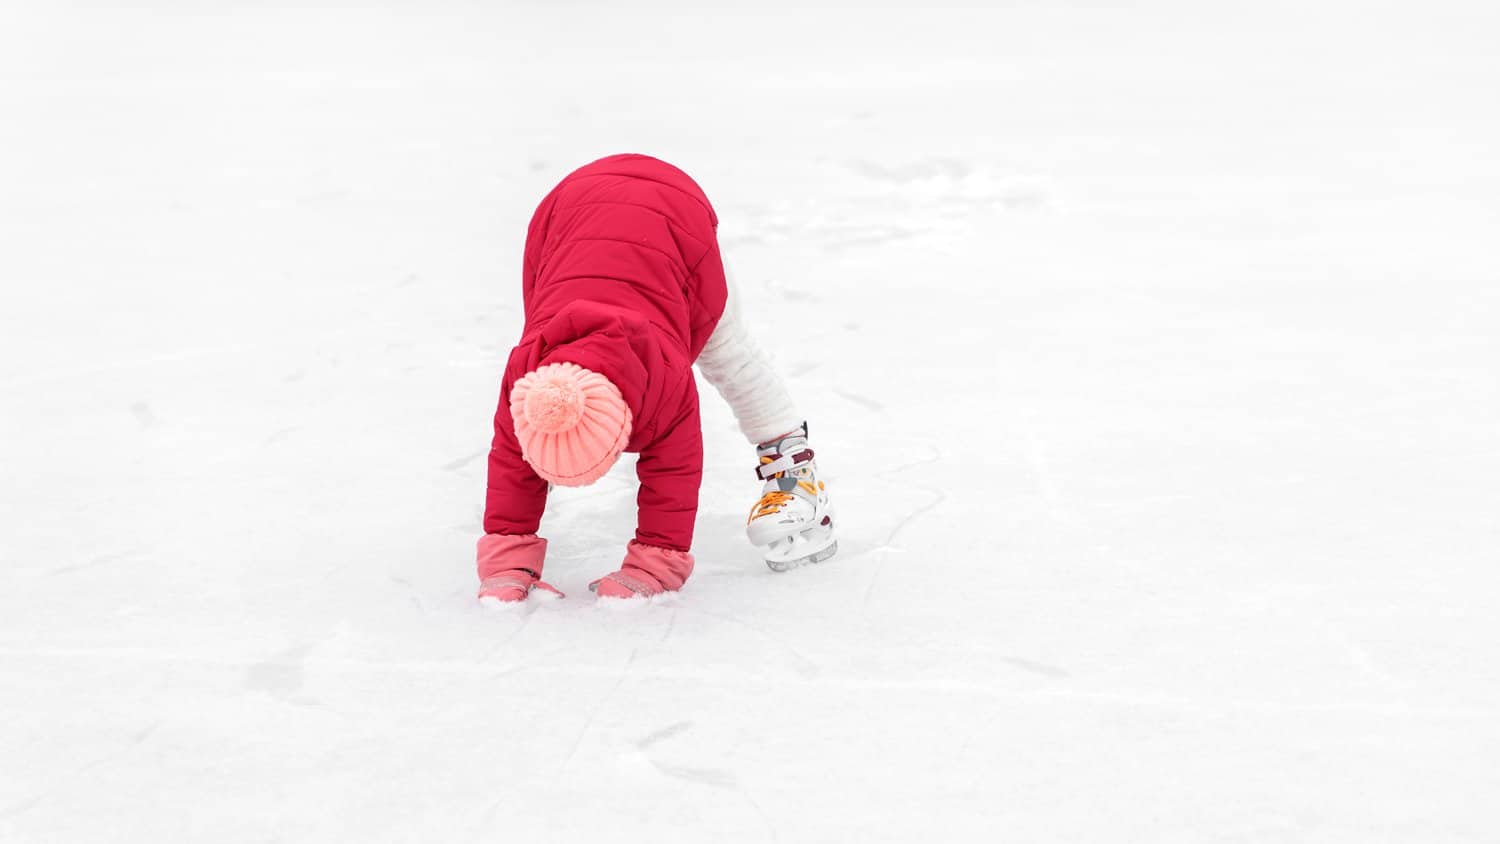 Little girl on ice skates.